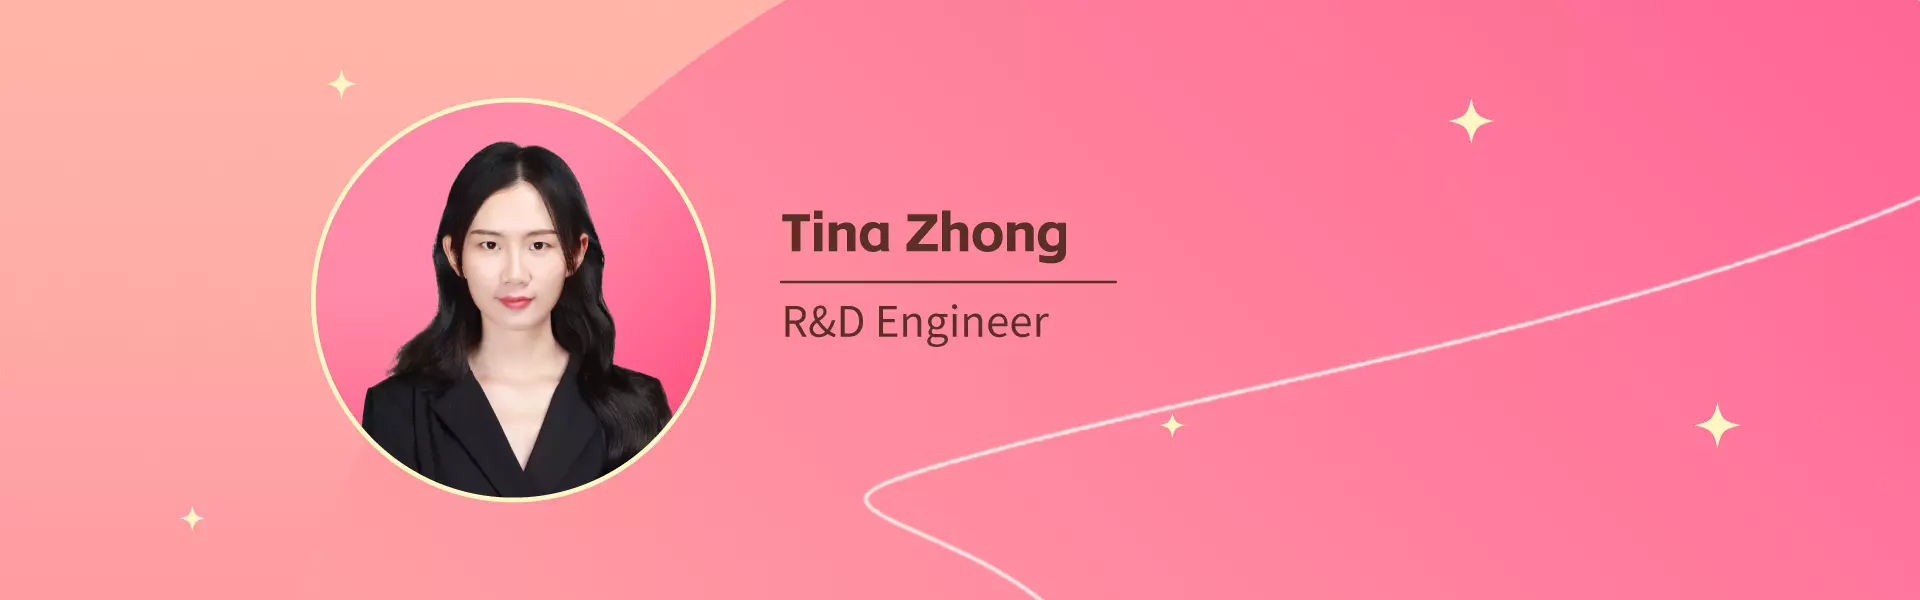 Tina Zhong   Zinwi R&D Engineer